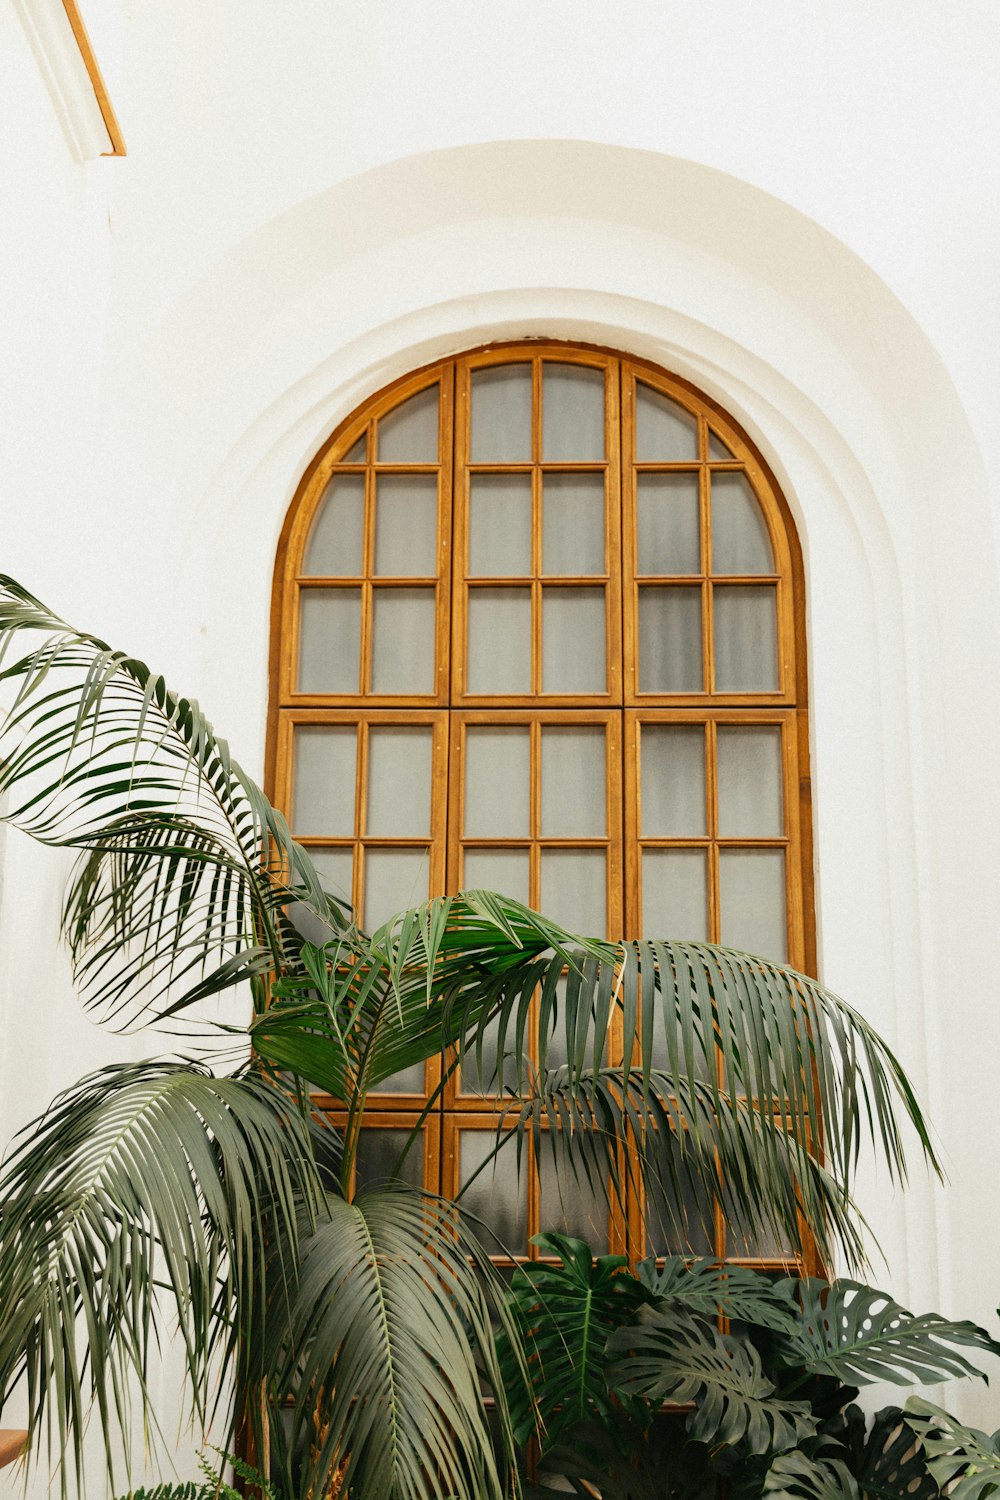 plante de palmier vert à côté de la fenêtre en verre encadrée en bois brun